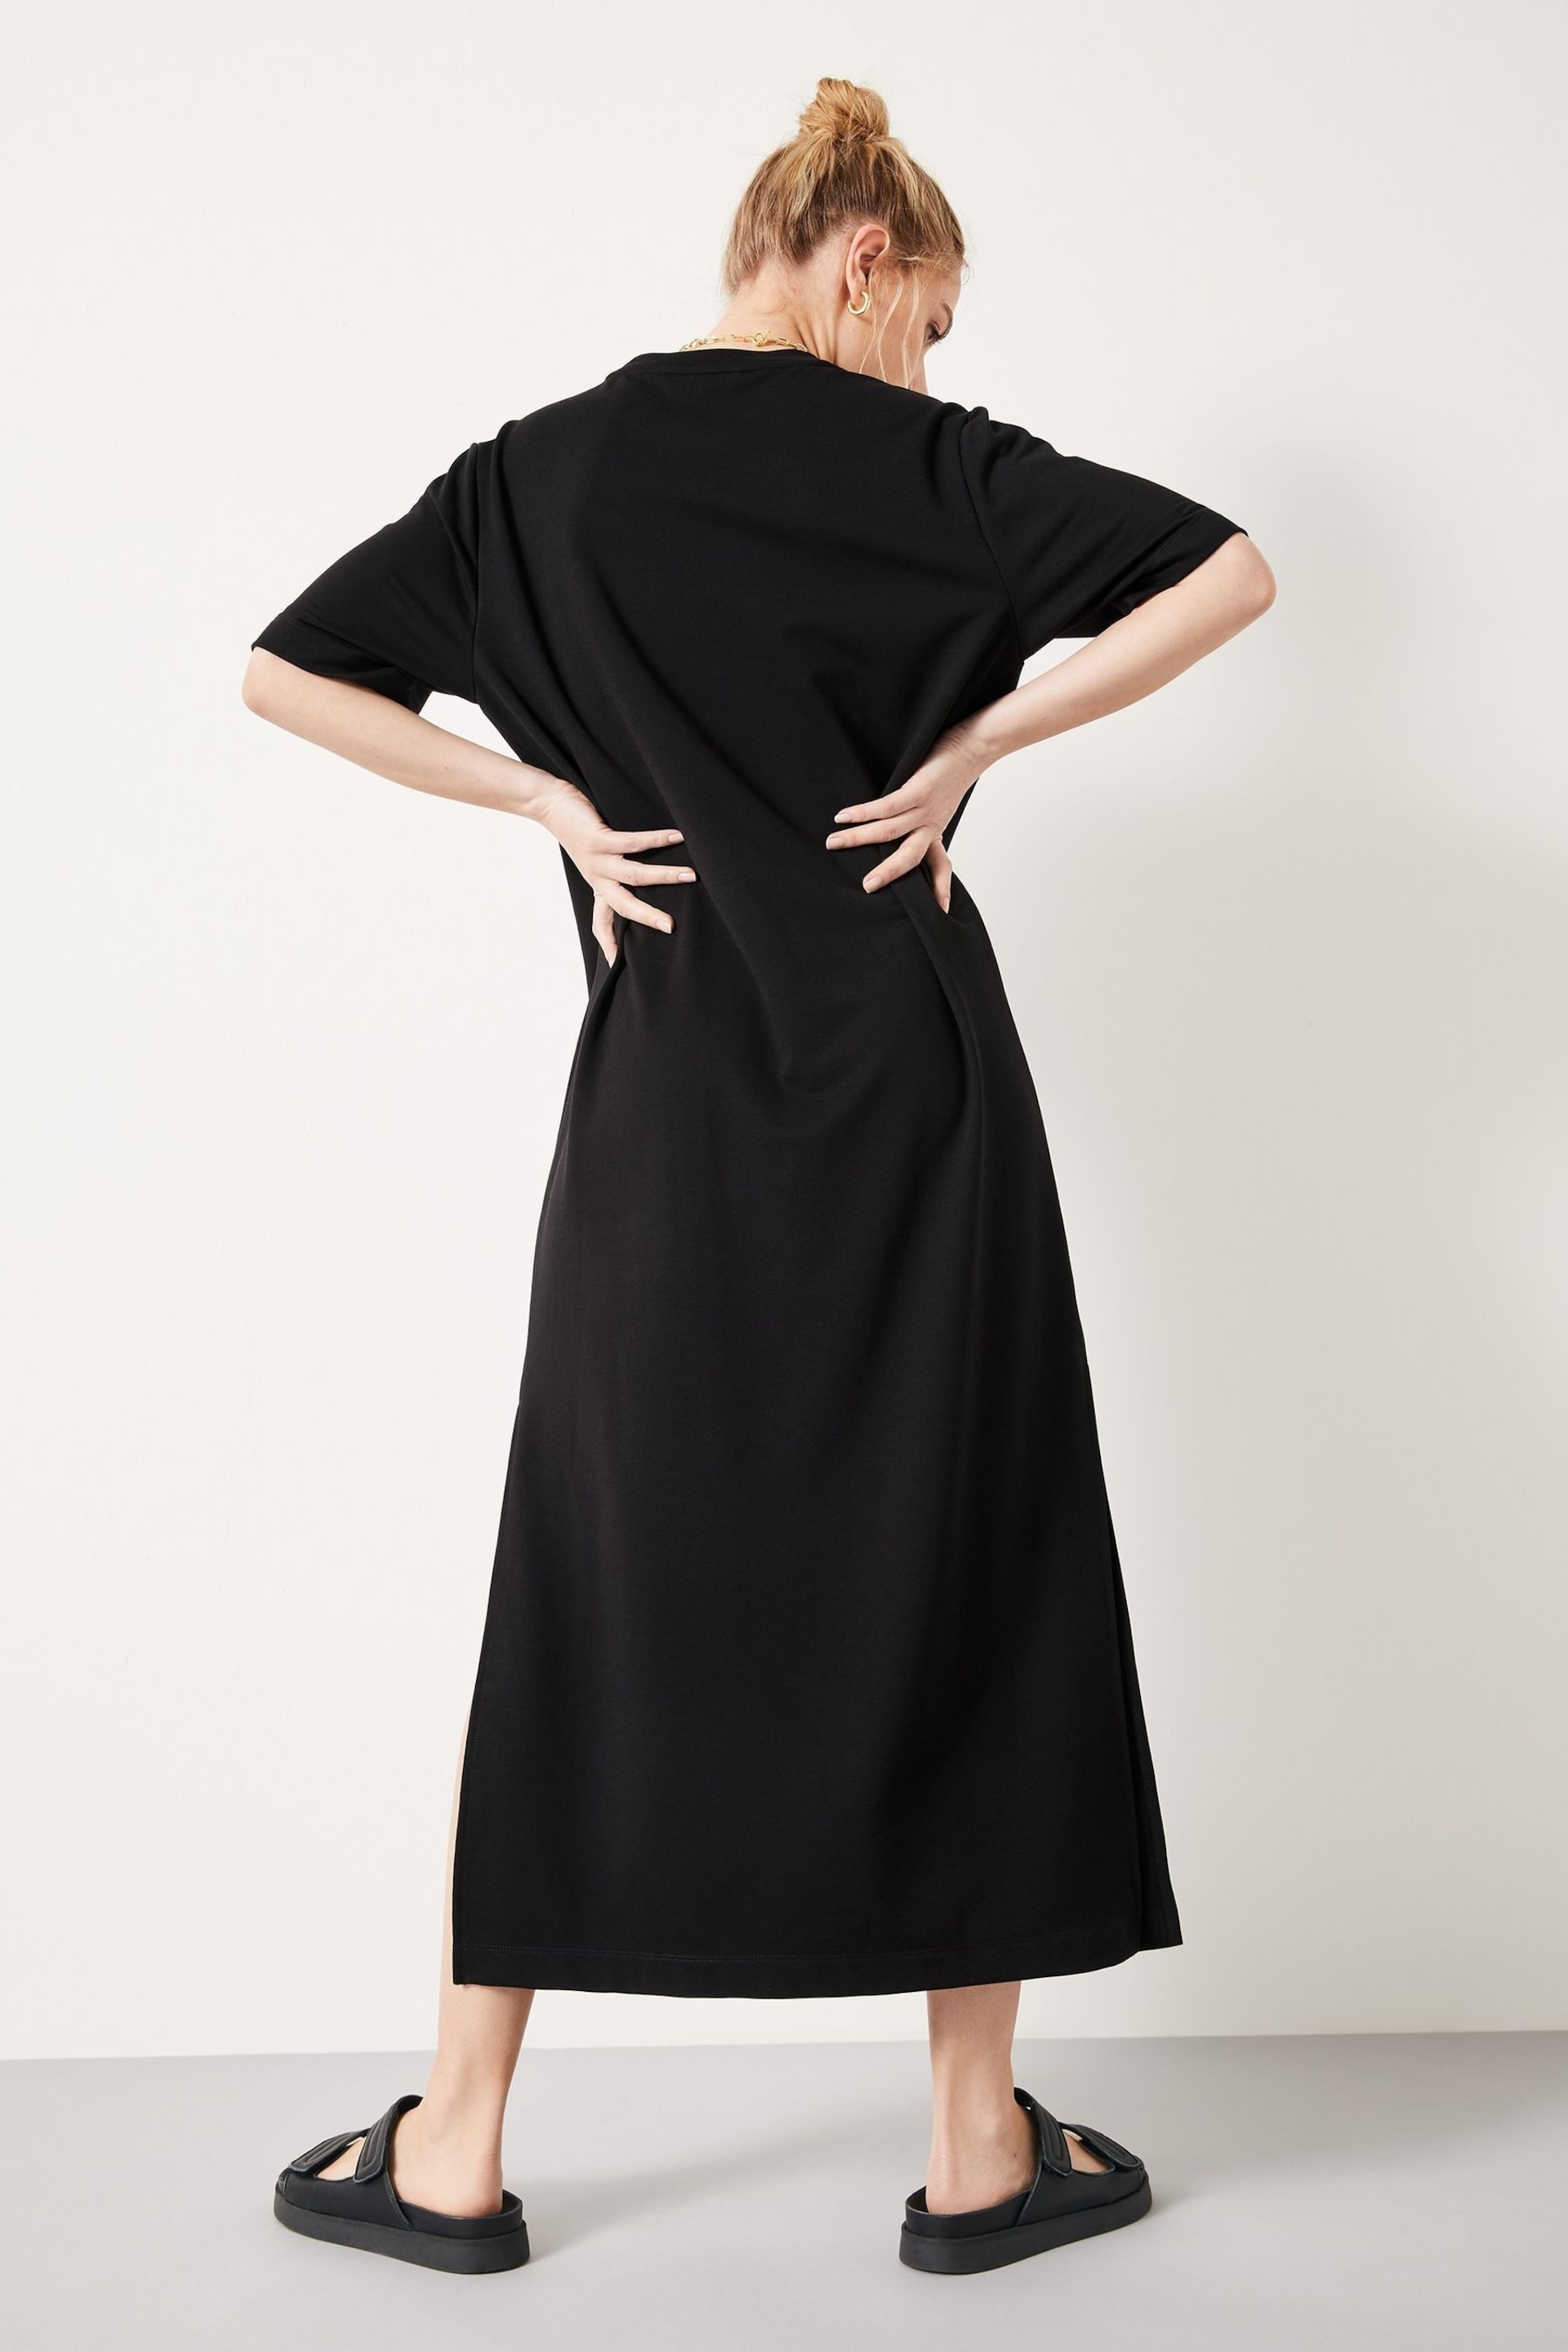 Hush Black Steph Midi T-shirt Dress - Image 2 of 5